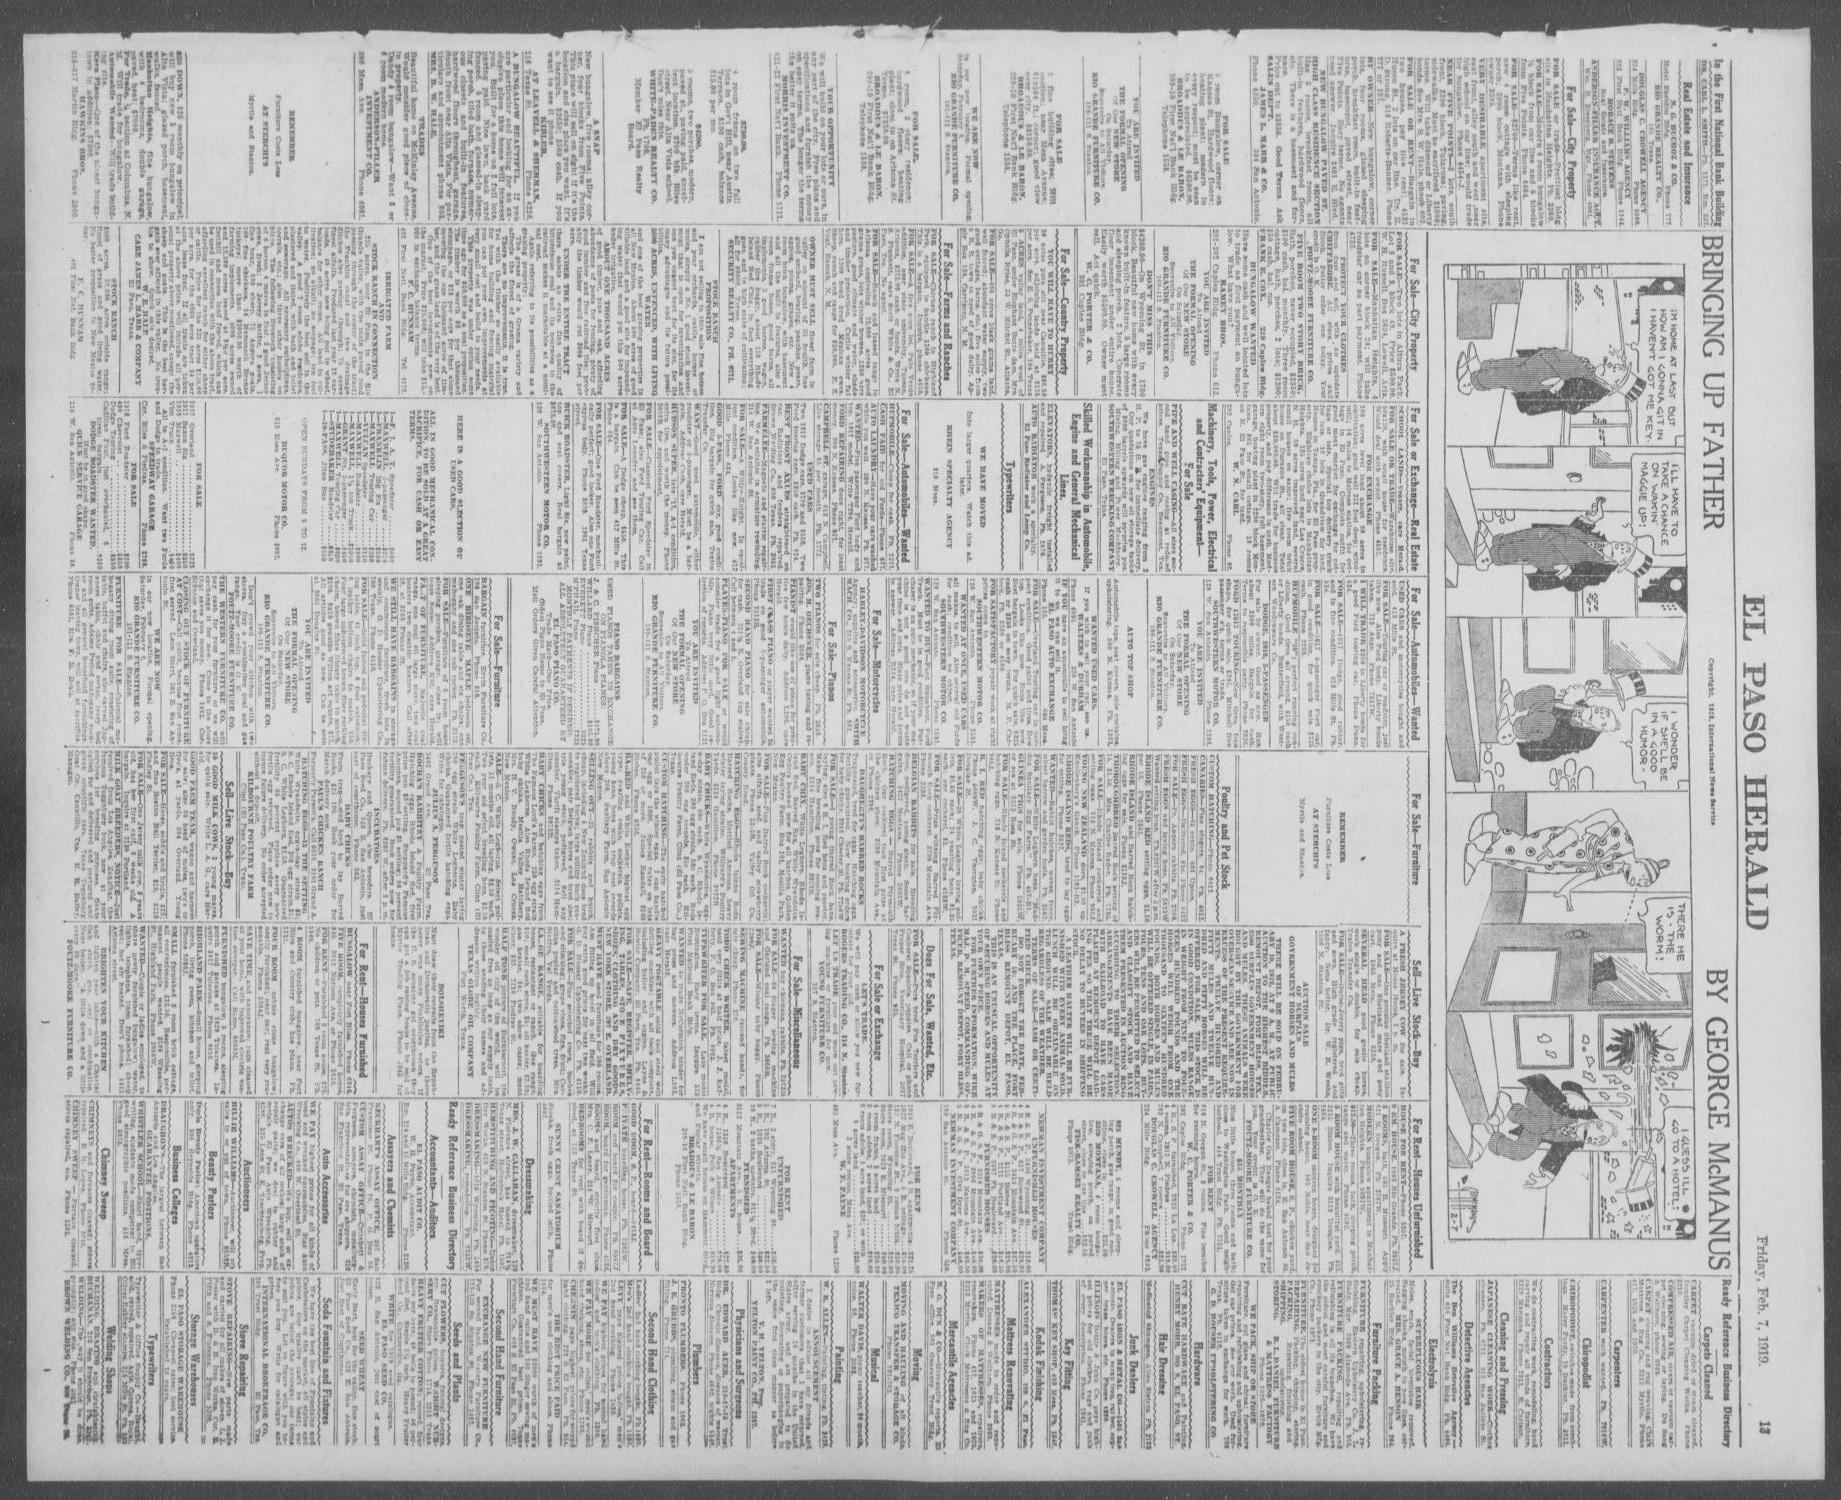 El Paso Herald (El Paso, Tex.), Ed. 1, Friday, February 7, 1919
                                                
                                                    [Sequence #]: 13 of 14
                                                